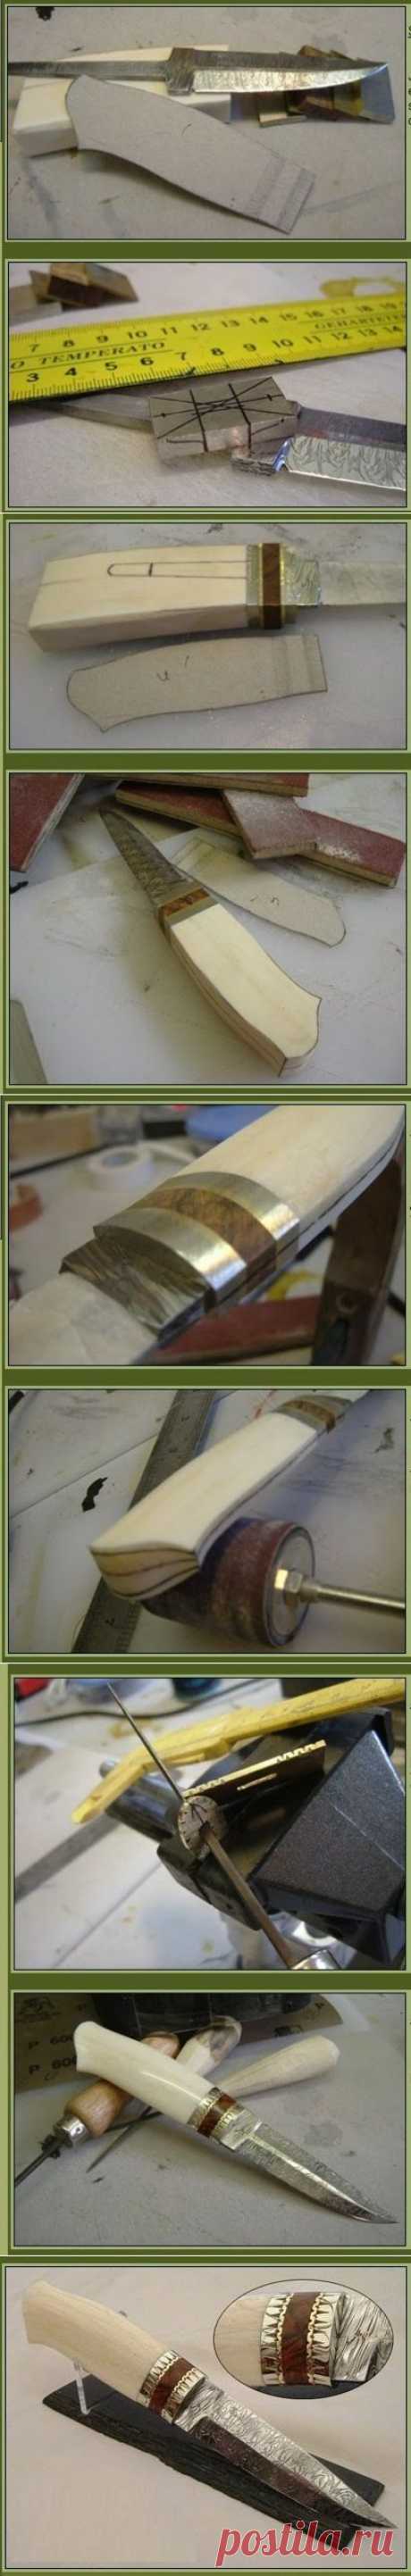 Как самостоятельно изготовить оригинальный подарочный скандинавский нож с рукояткой из кости. Пошаговая инструкция с наглядными фото, показывающая процесс, как самому сделать шведский или финский нож с костяной рукояткой - Сделать нож